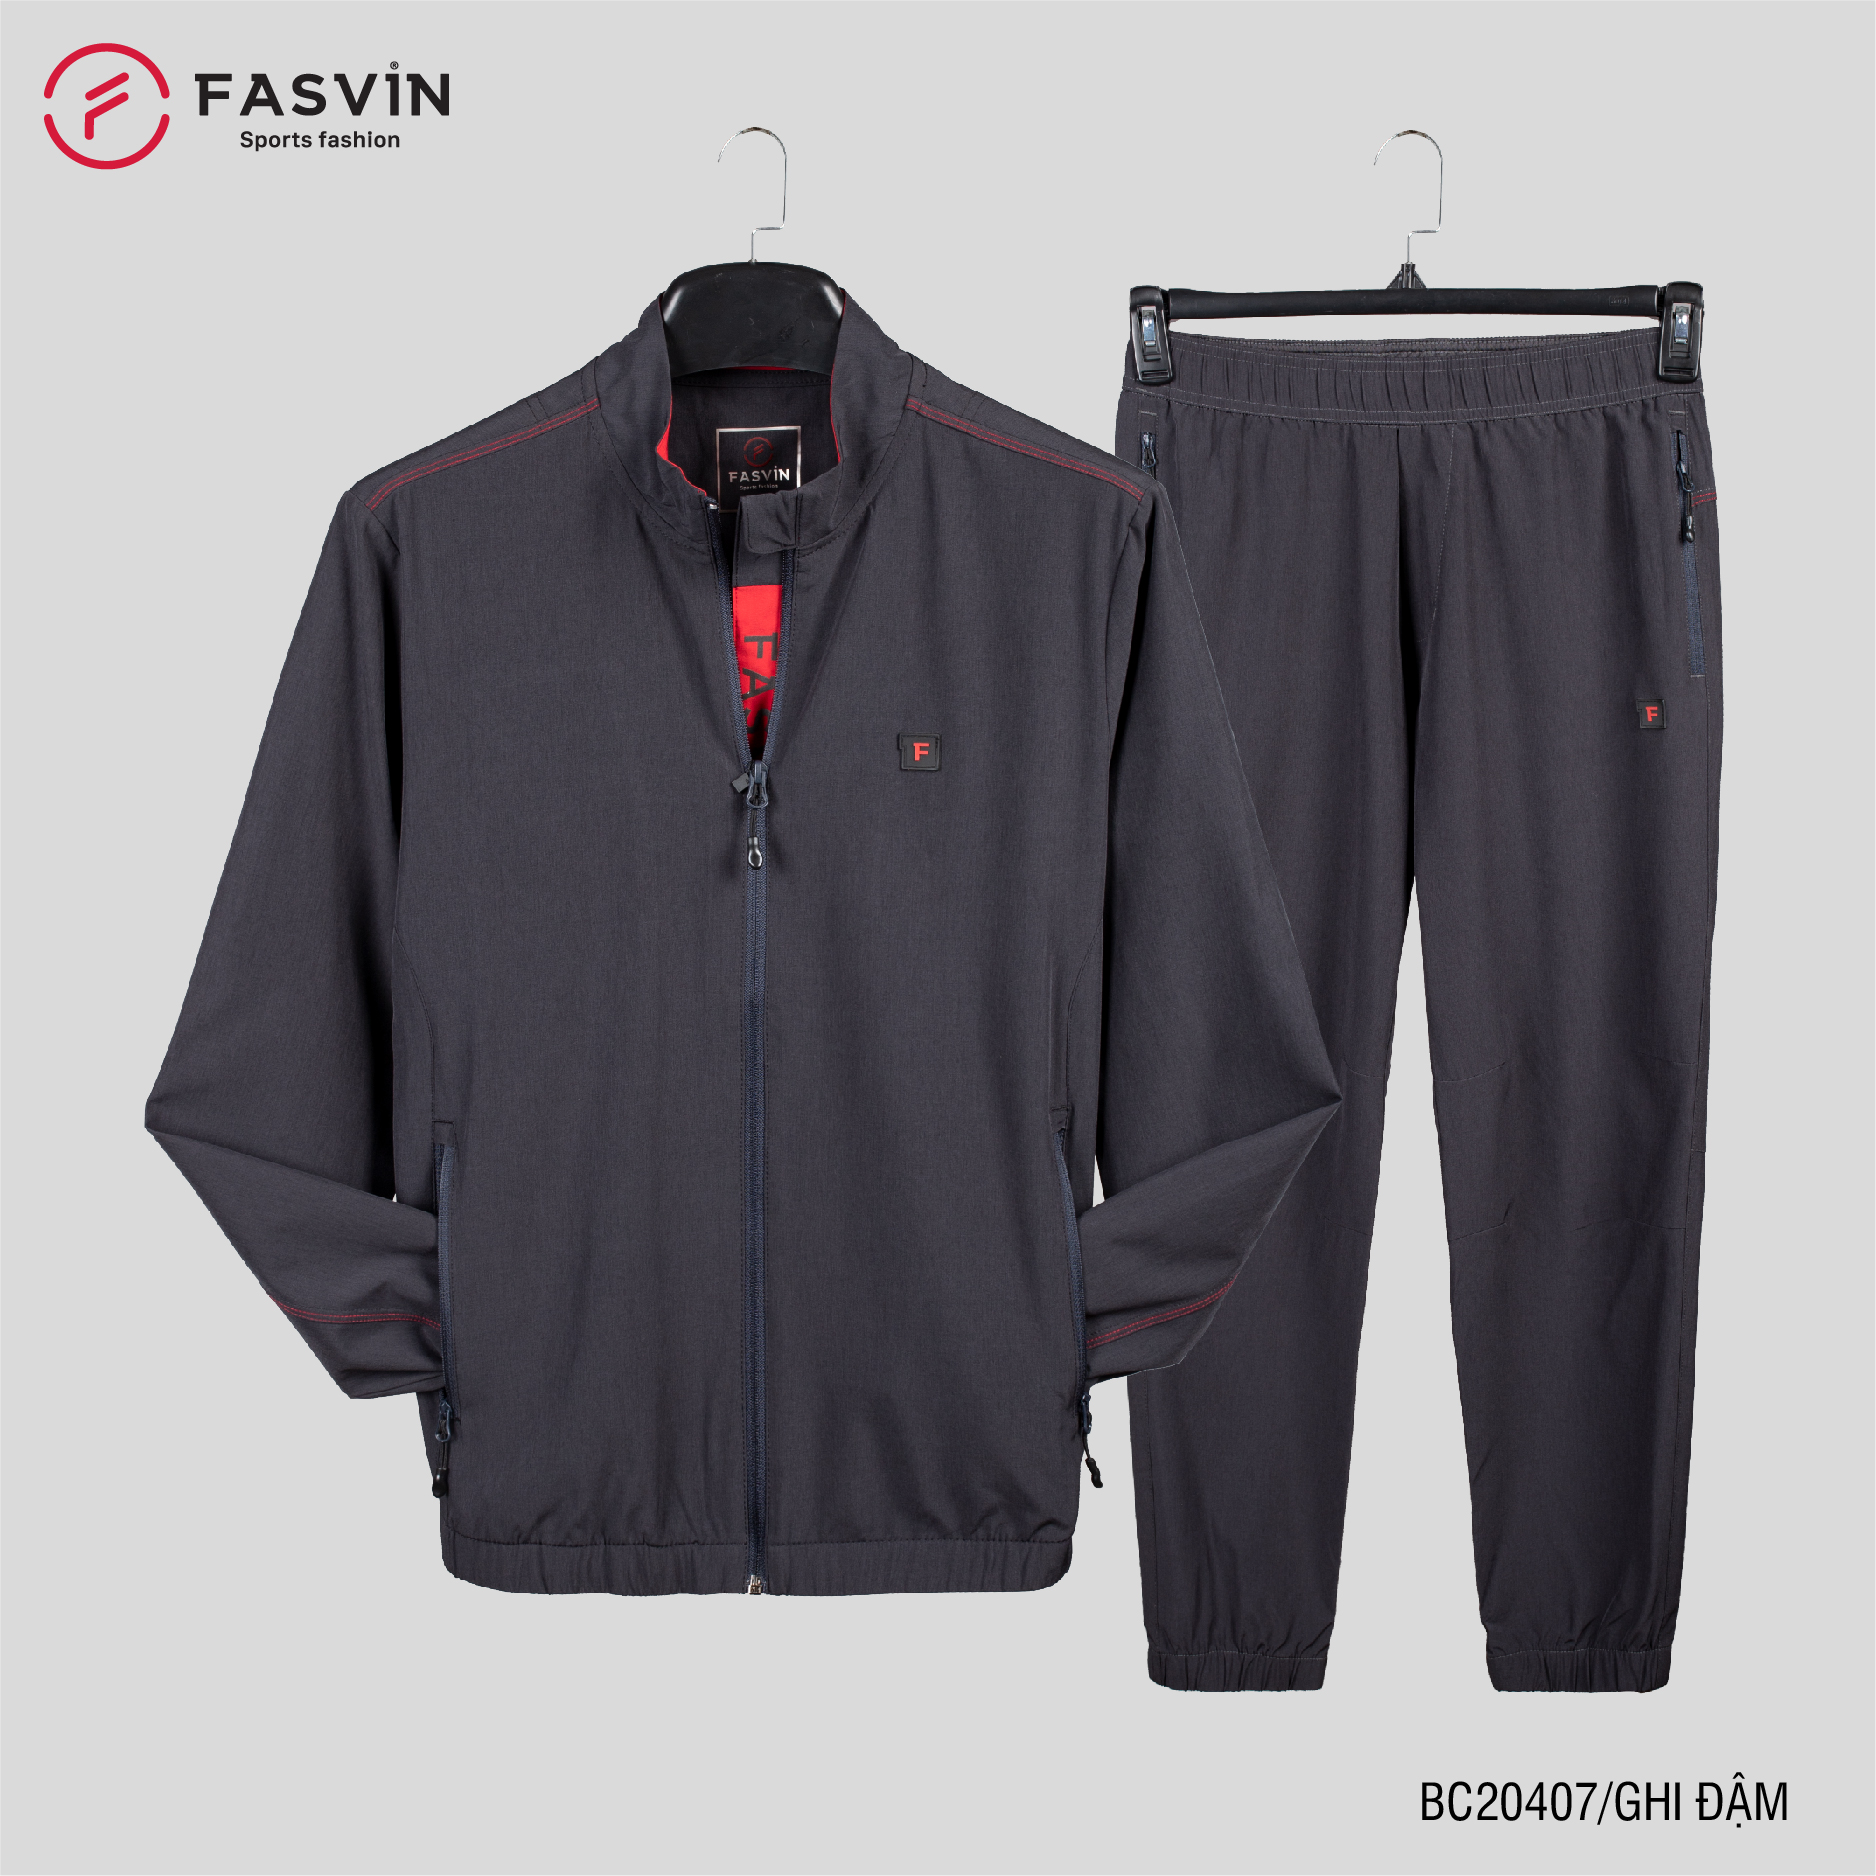 Bộ quần áo thể thao nam Fasvin BC20407.HN vải gió chun 01 lớp mềm nhẹ co dãn